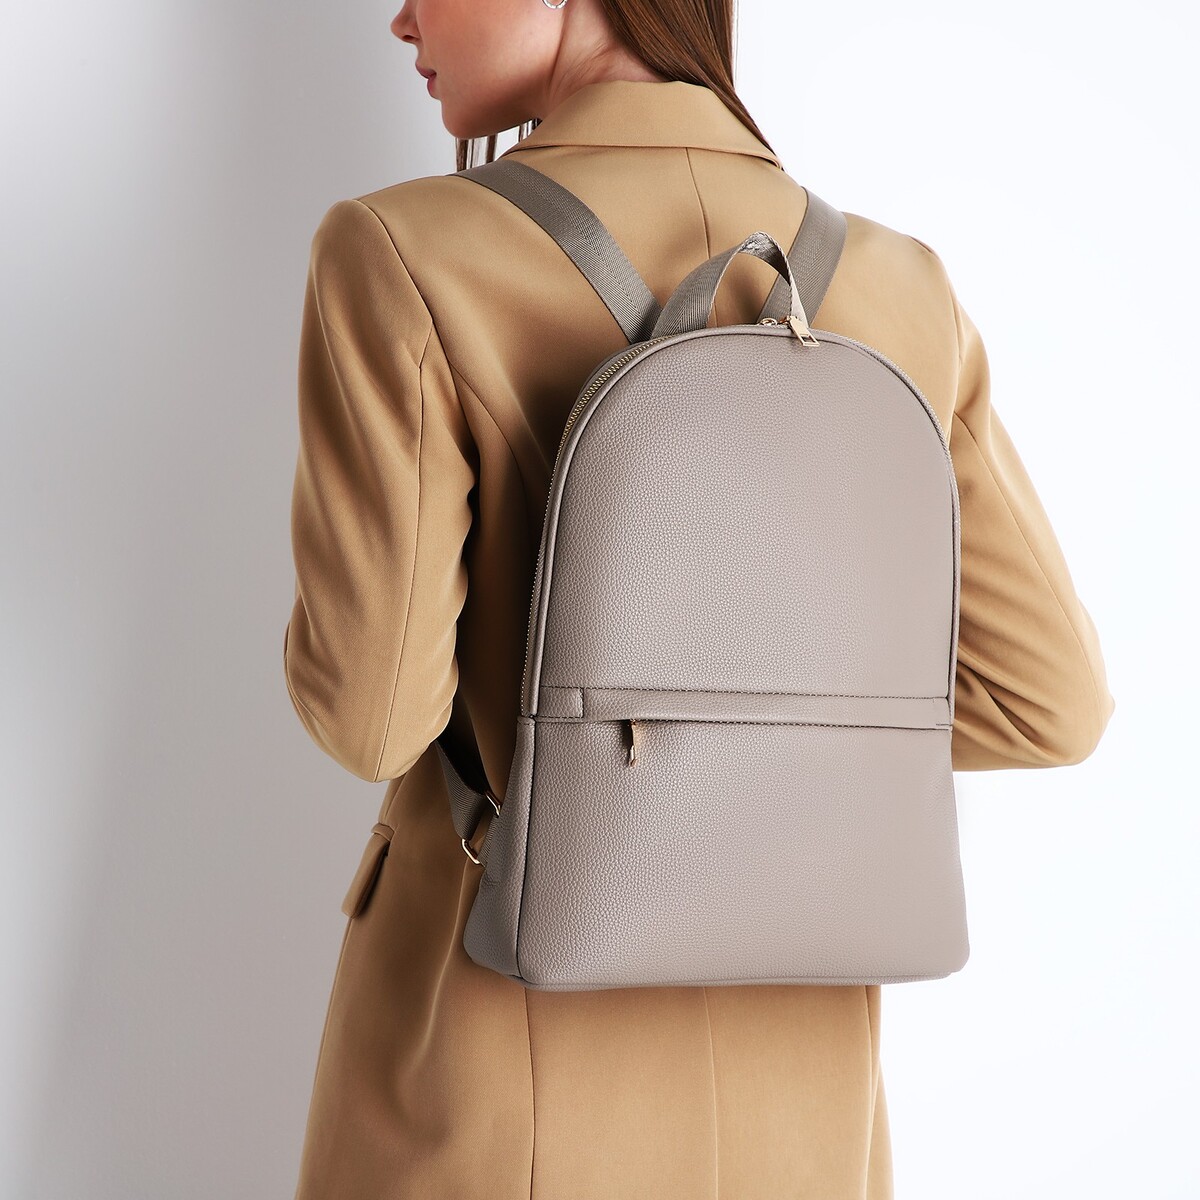 Рюкзак женский из искусственной кожи на молнии, 2 кармана, цвет бежевый рюкзак школьный из текстиля на молнии 4 кармана кошелек бежевый